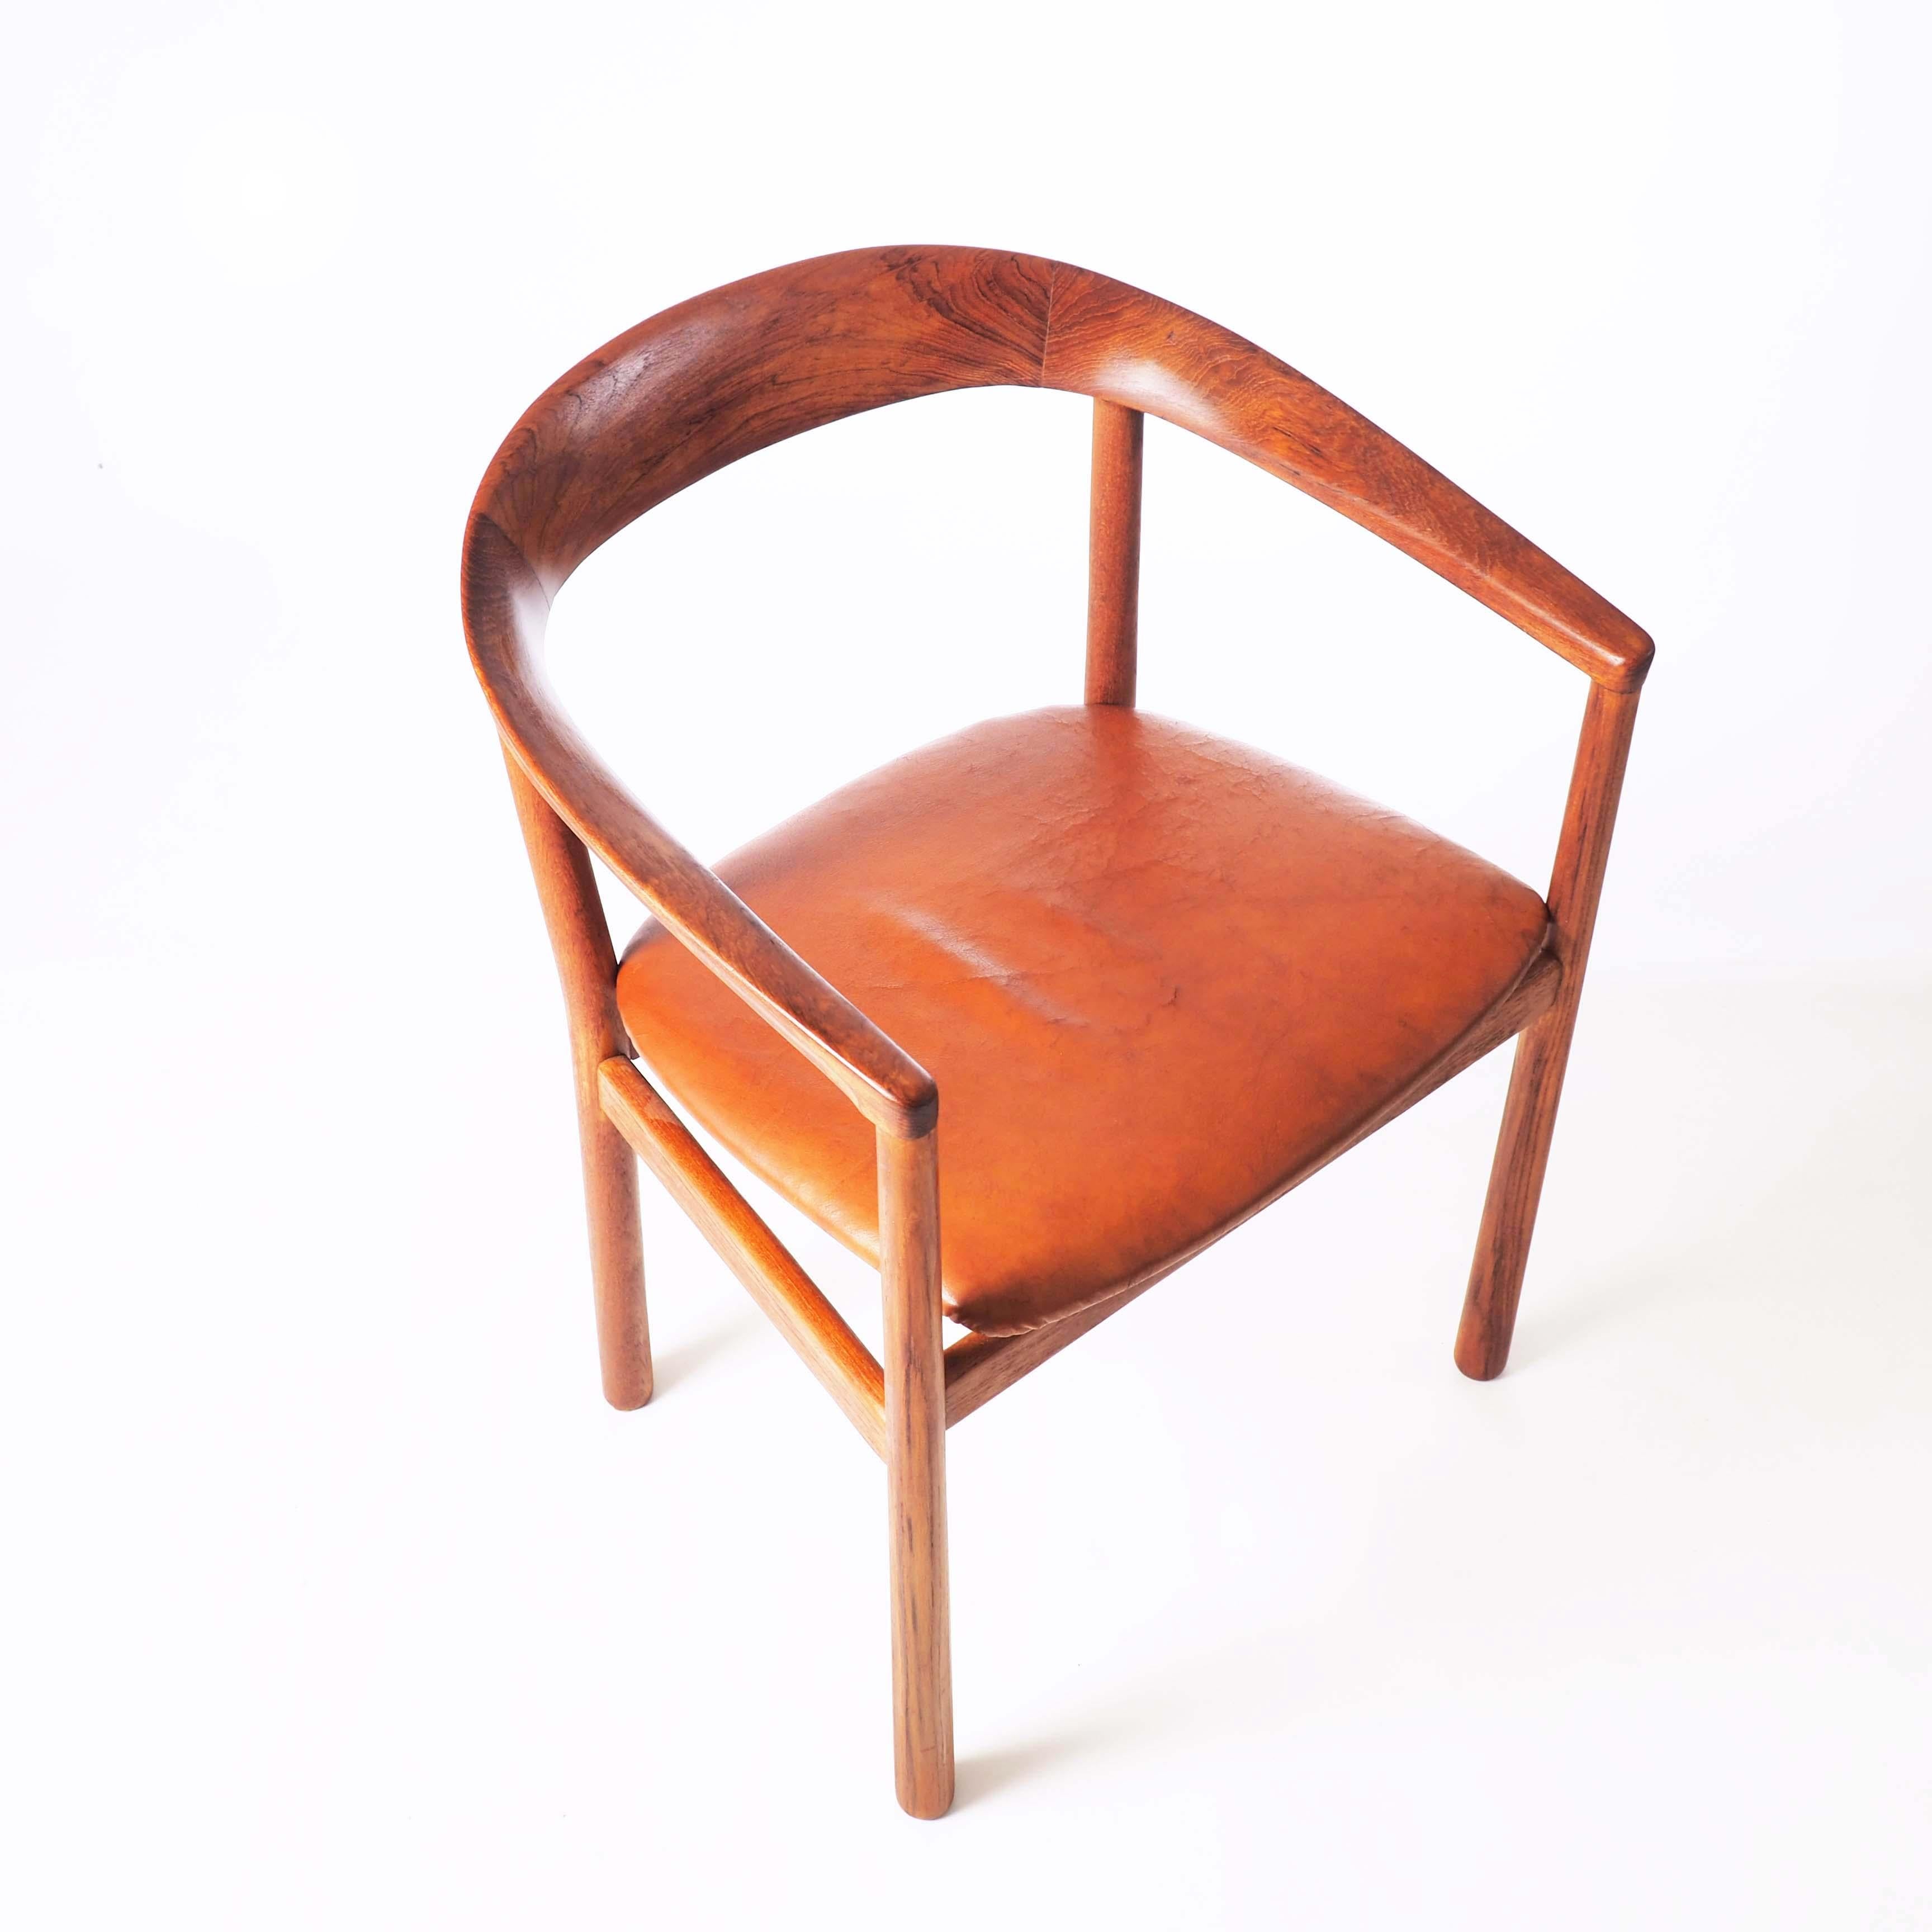 Cette chaise élégante a été conçue par Carl-Axel Acking pour l'ambassade de Suède à Tokyo en 1959. Cette pièce est en teck massif et en cuir naturel.